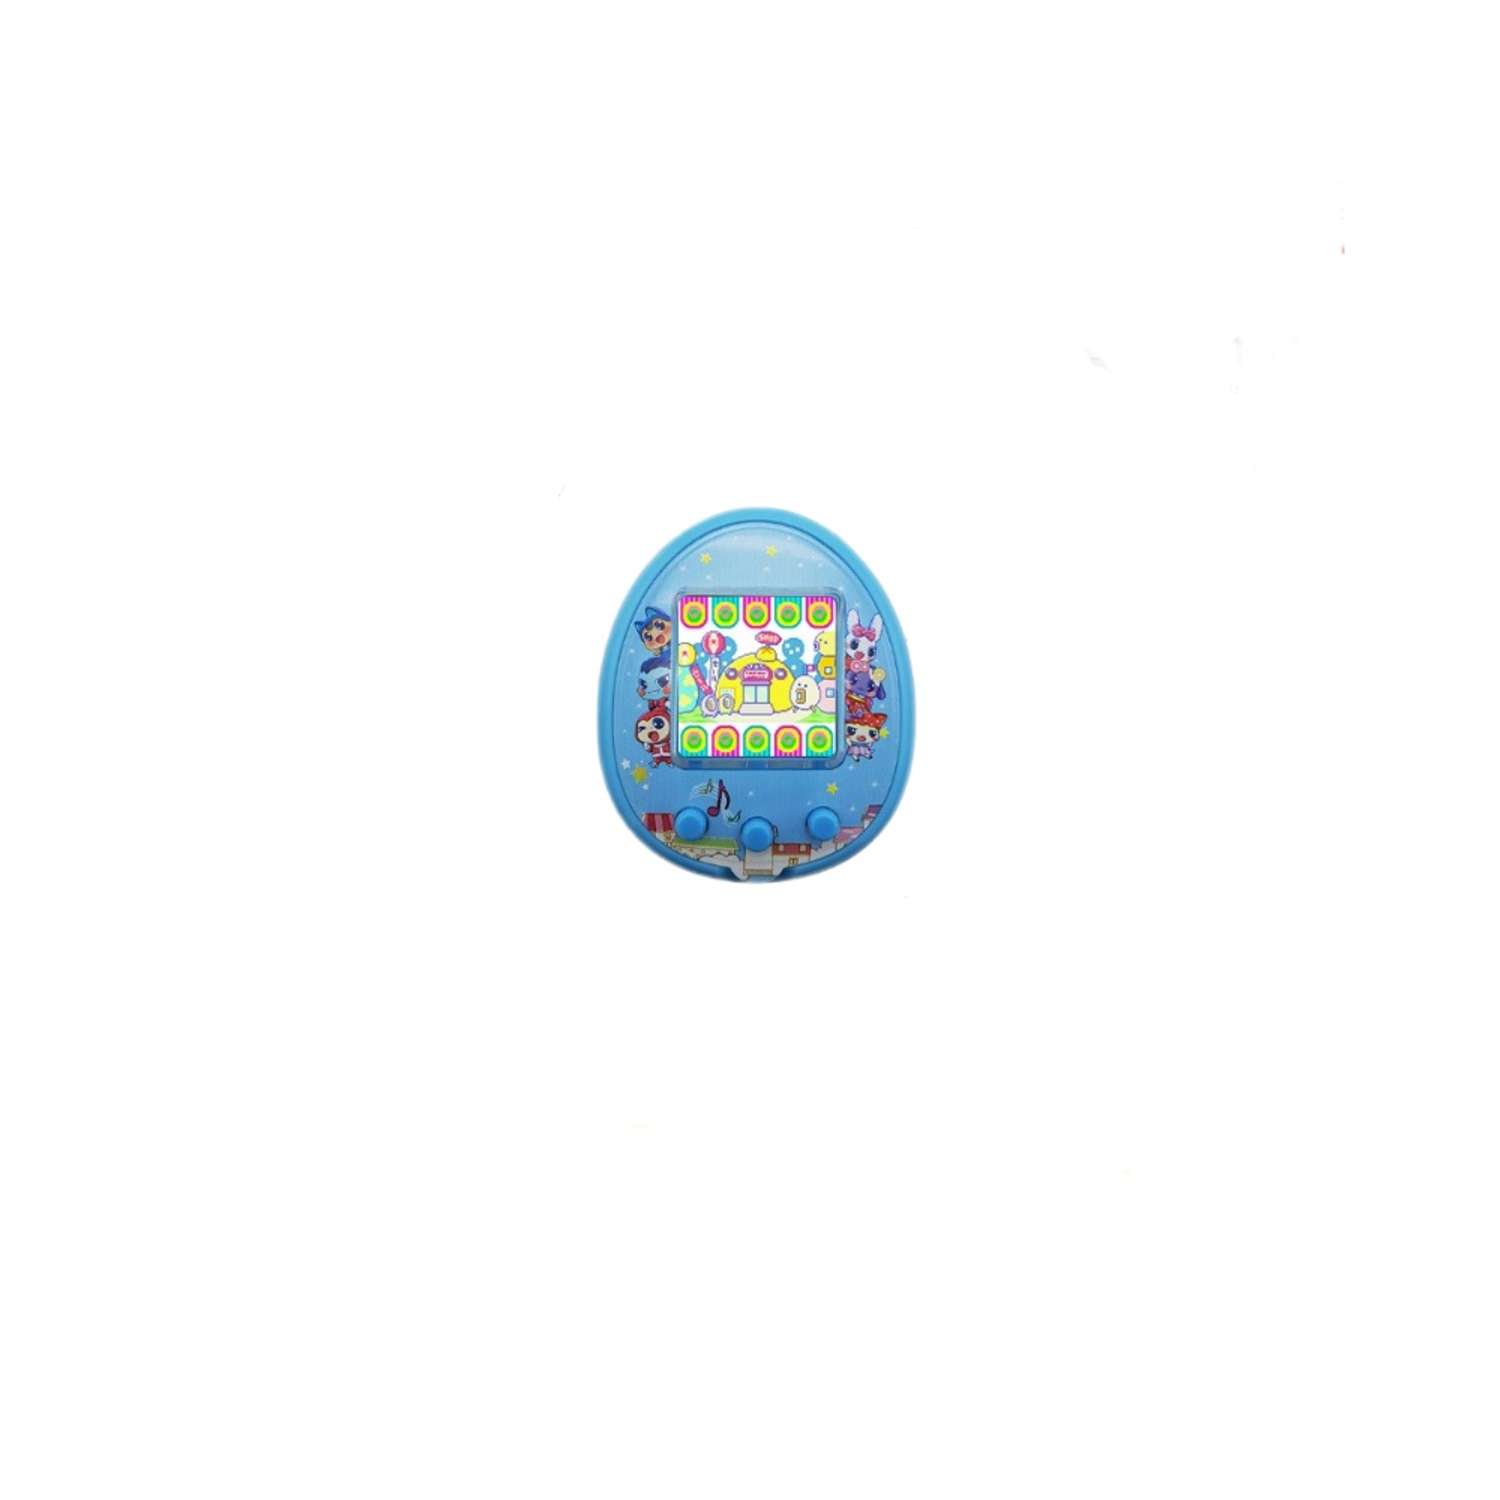 Тамагочи Бестселлер Электронный Питомец с цветным дисплеем МД голубой - фото 1